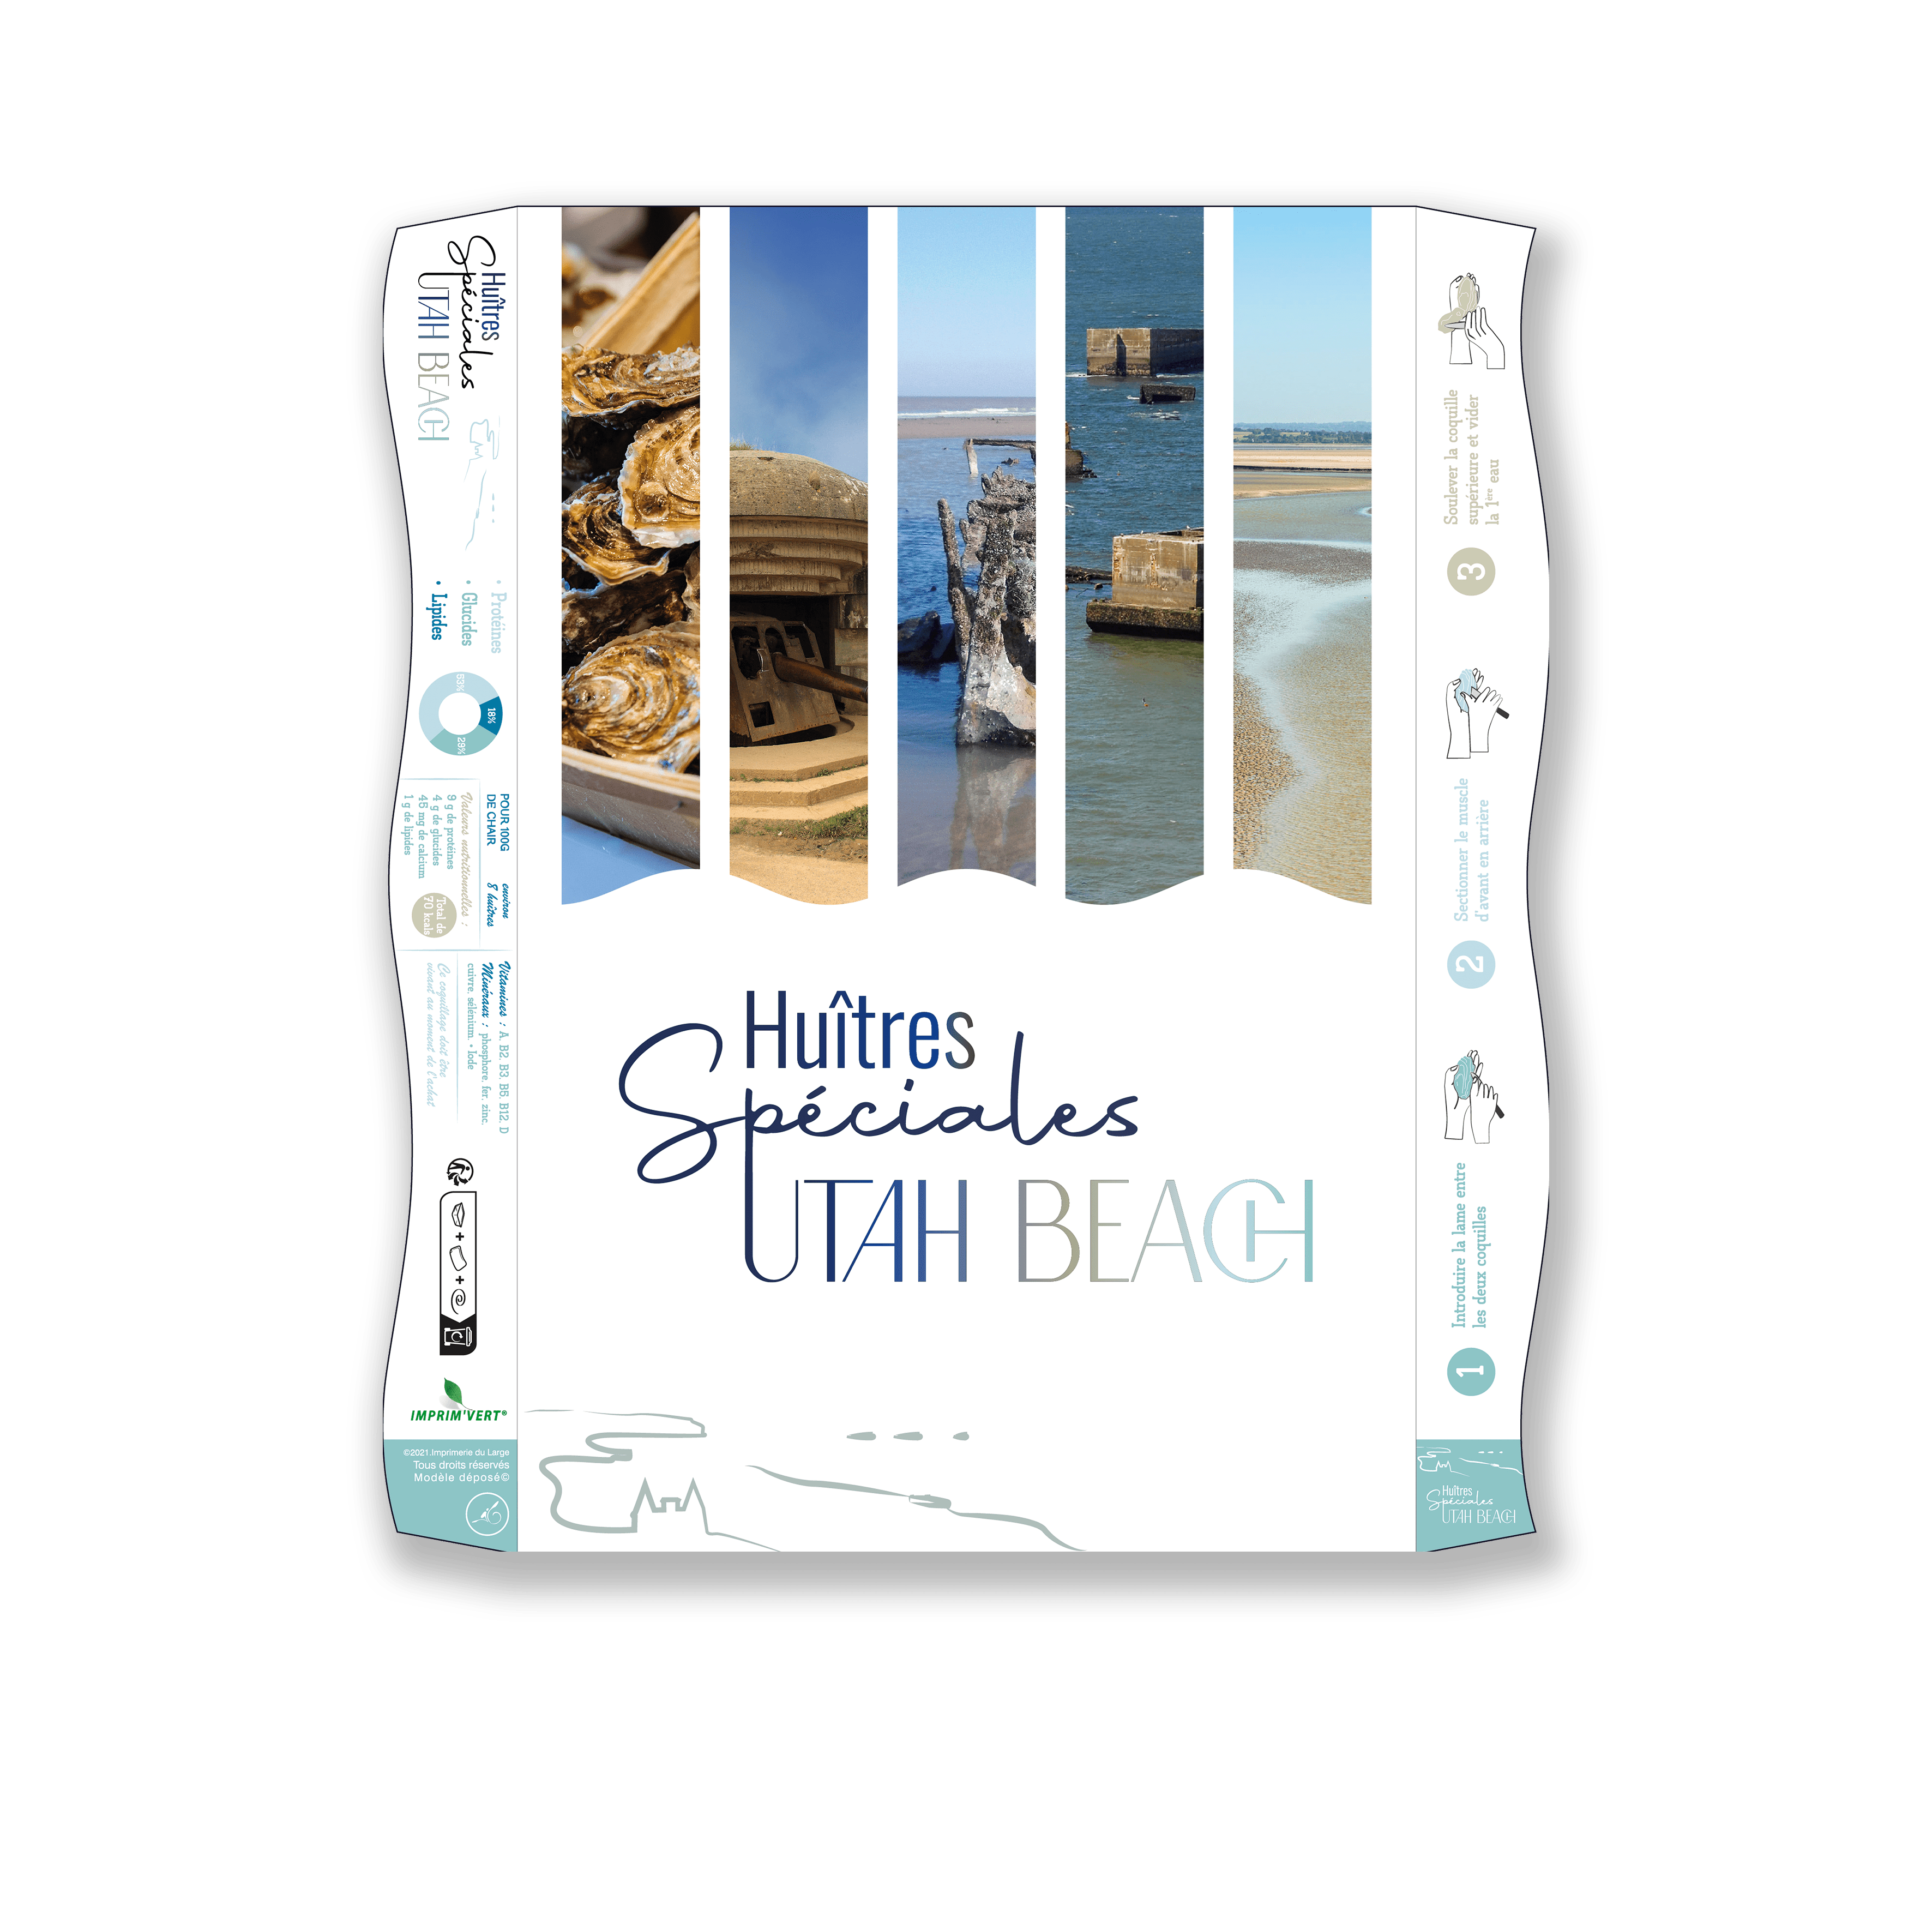 Impression bourriche d'huitre territoriale Utah Beach - Par imprimerie du large